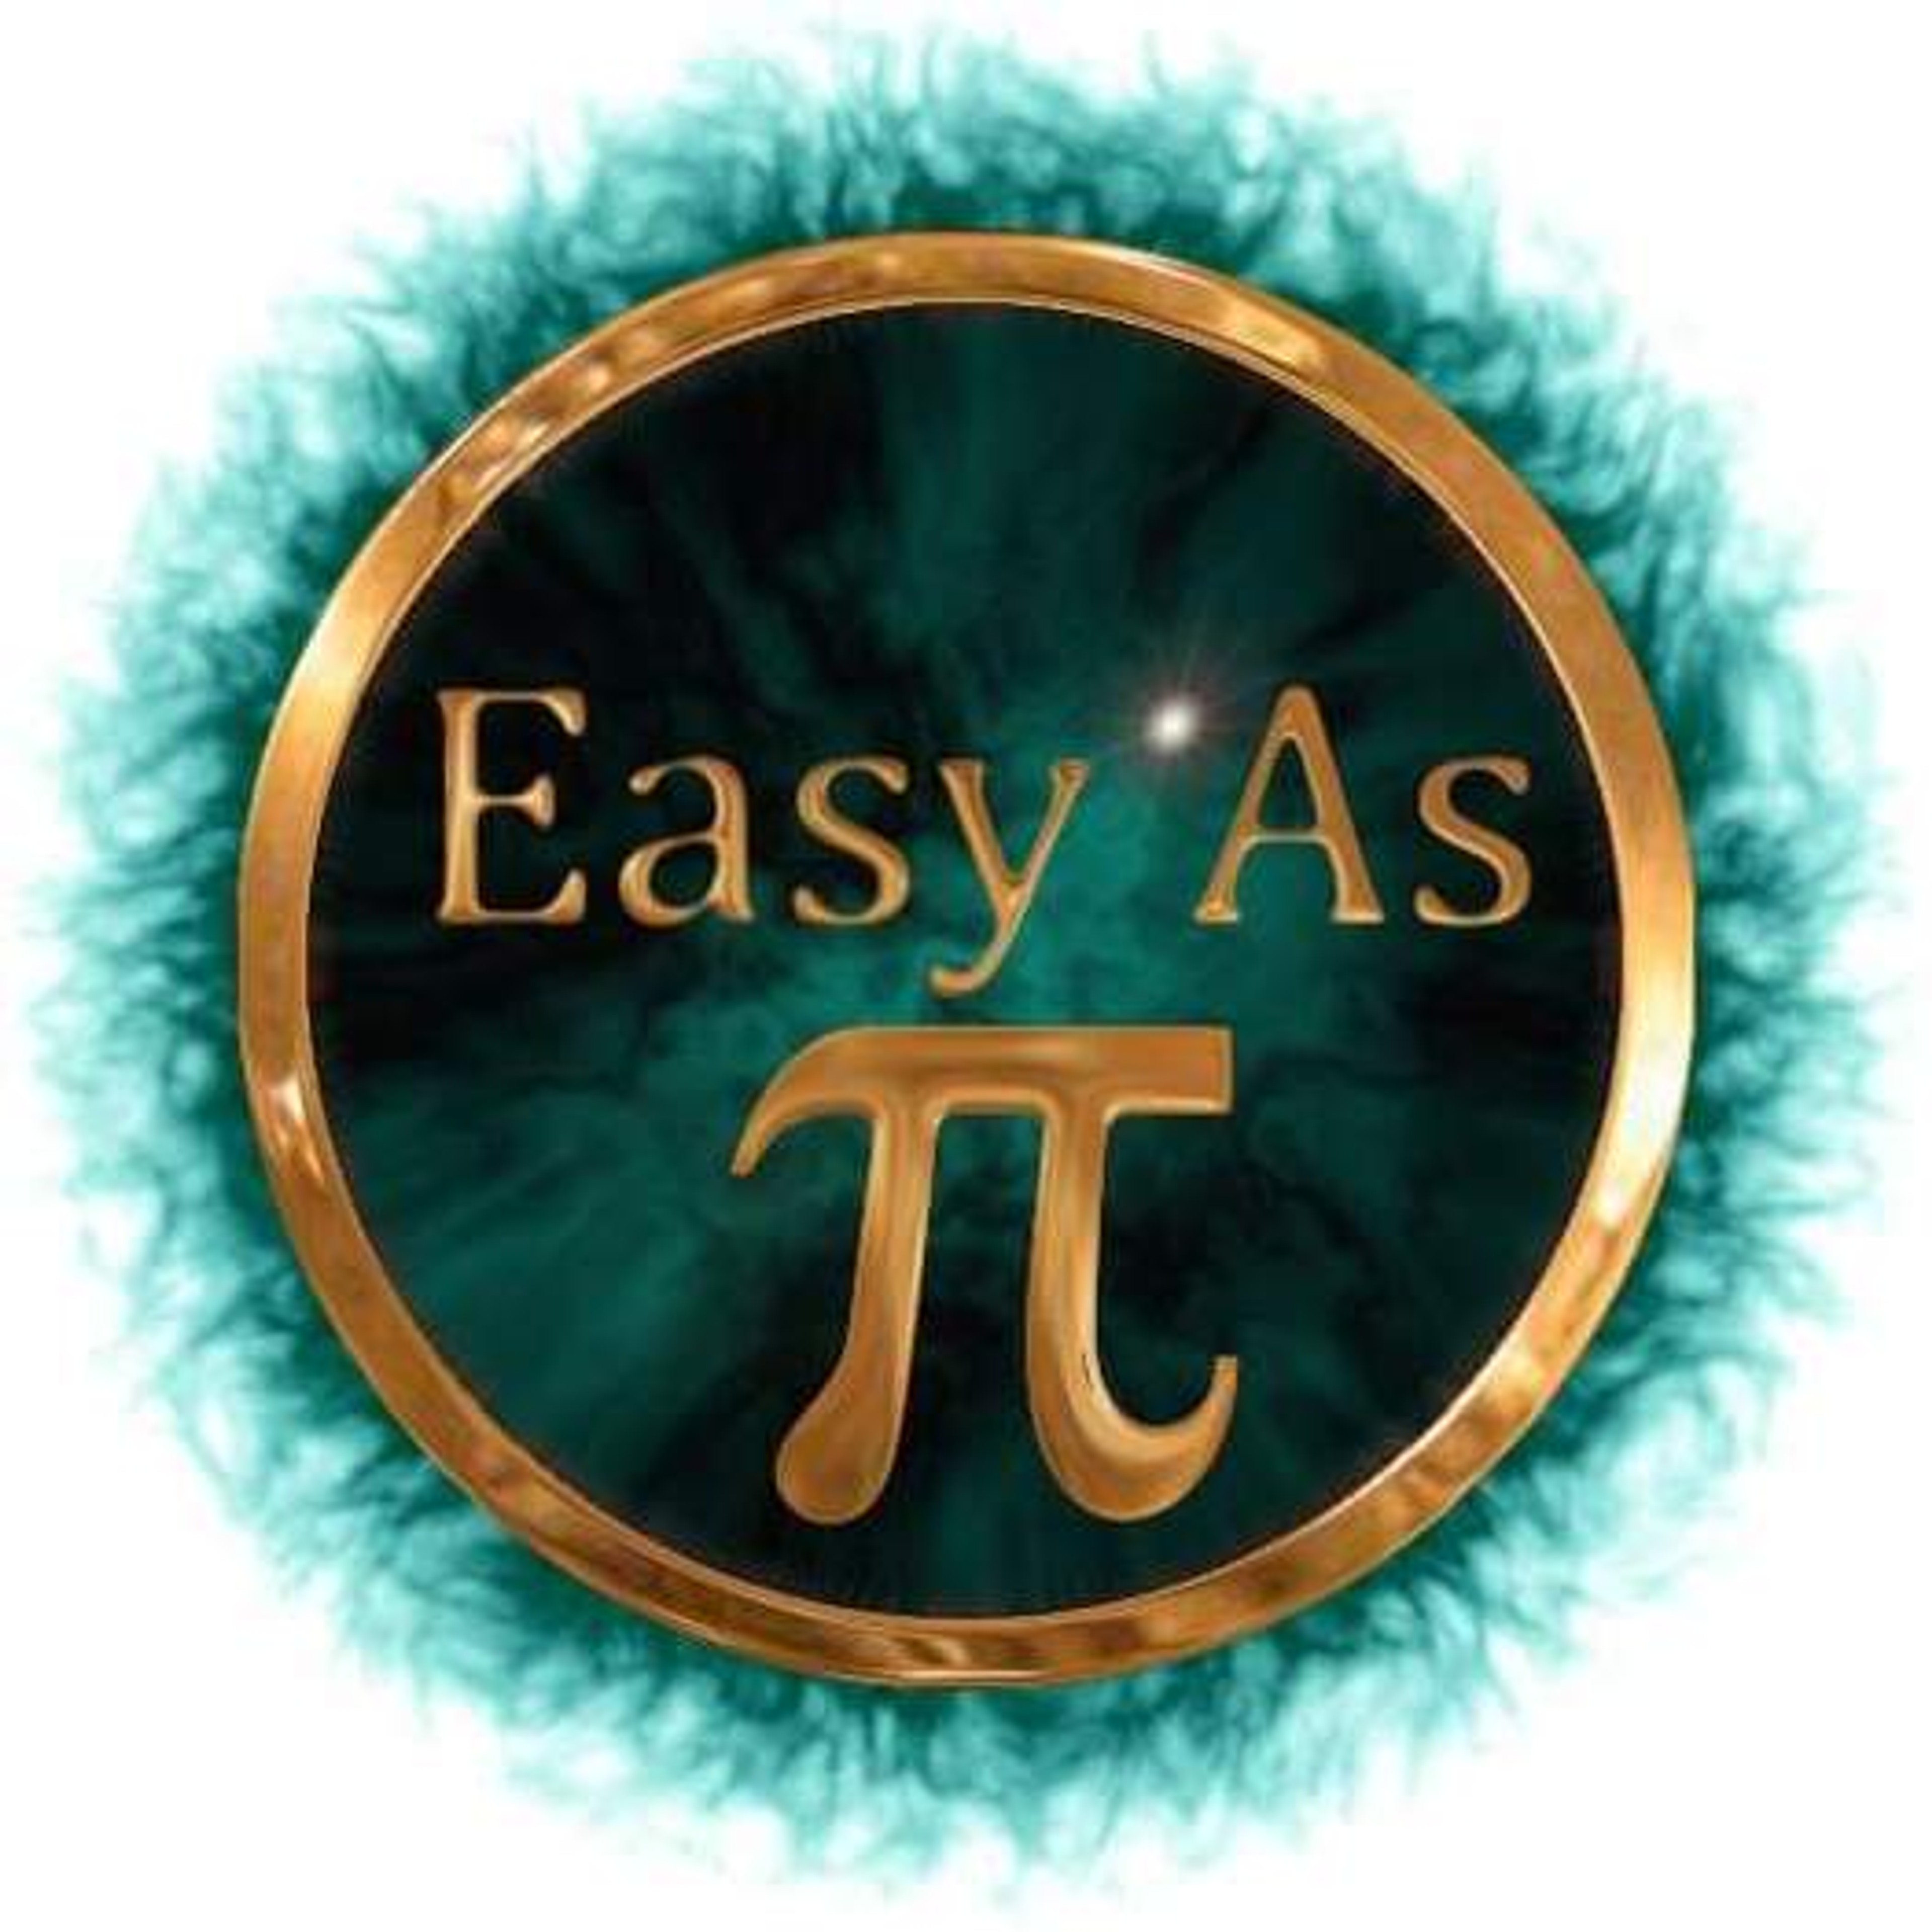 EasyasPi Tutoring Math & Science Since 2009